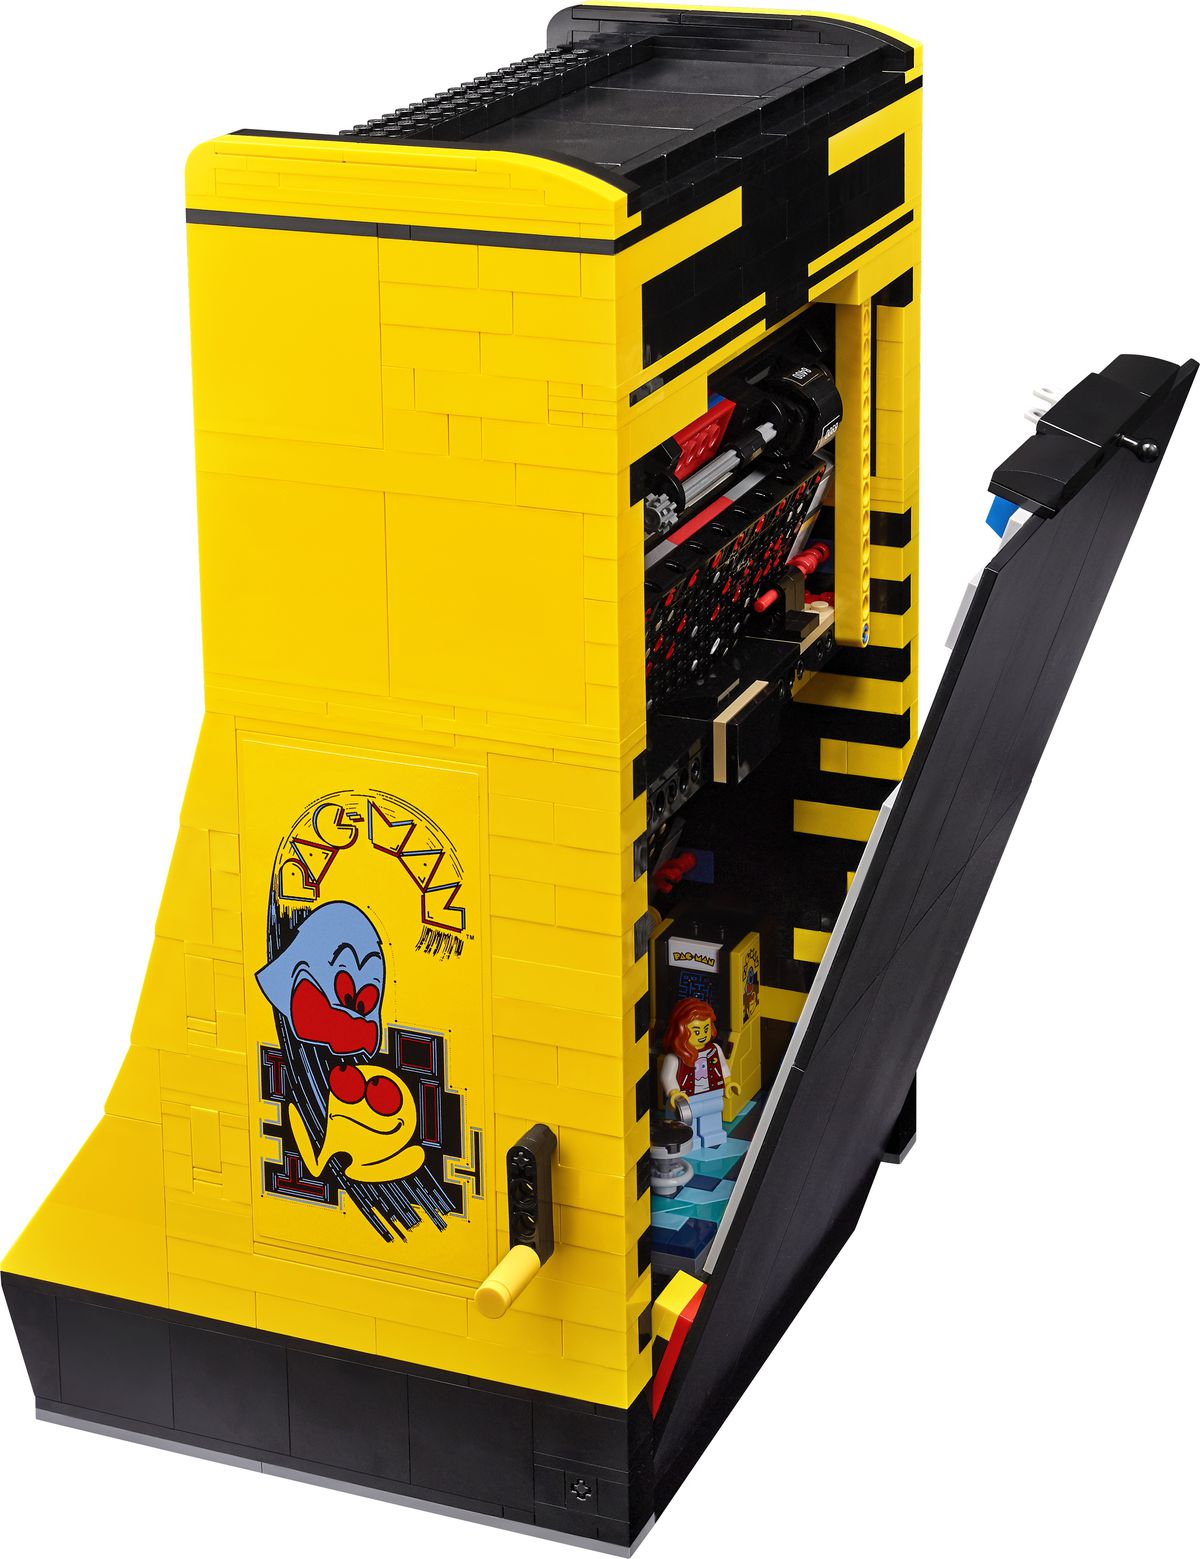 il retro dell'armadietto del set Lego di Pac-Man